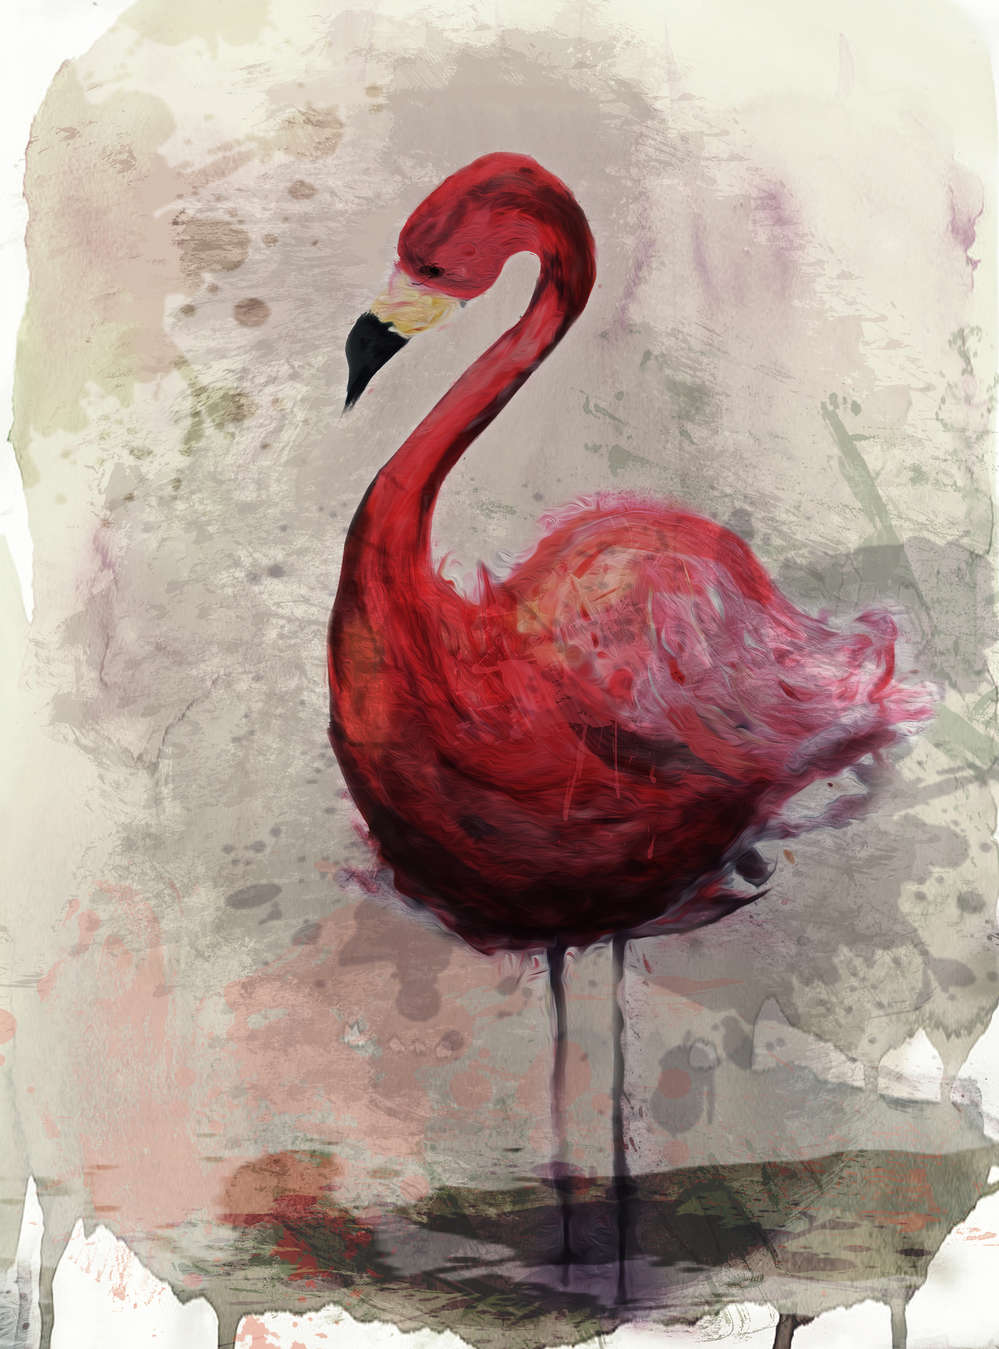             Papier peint aquarelle avec motif flamant rose en style de dessin
        